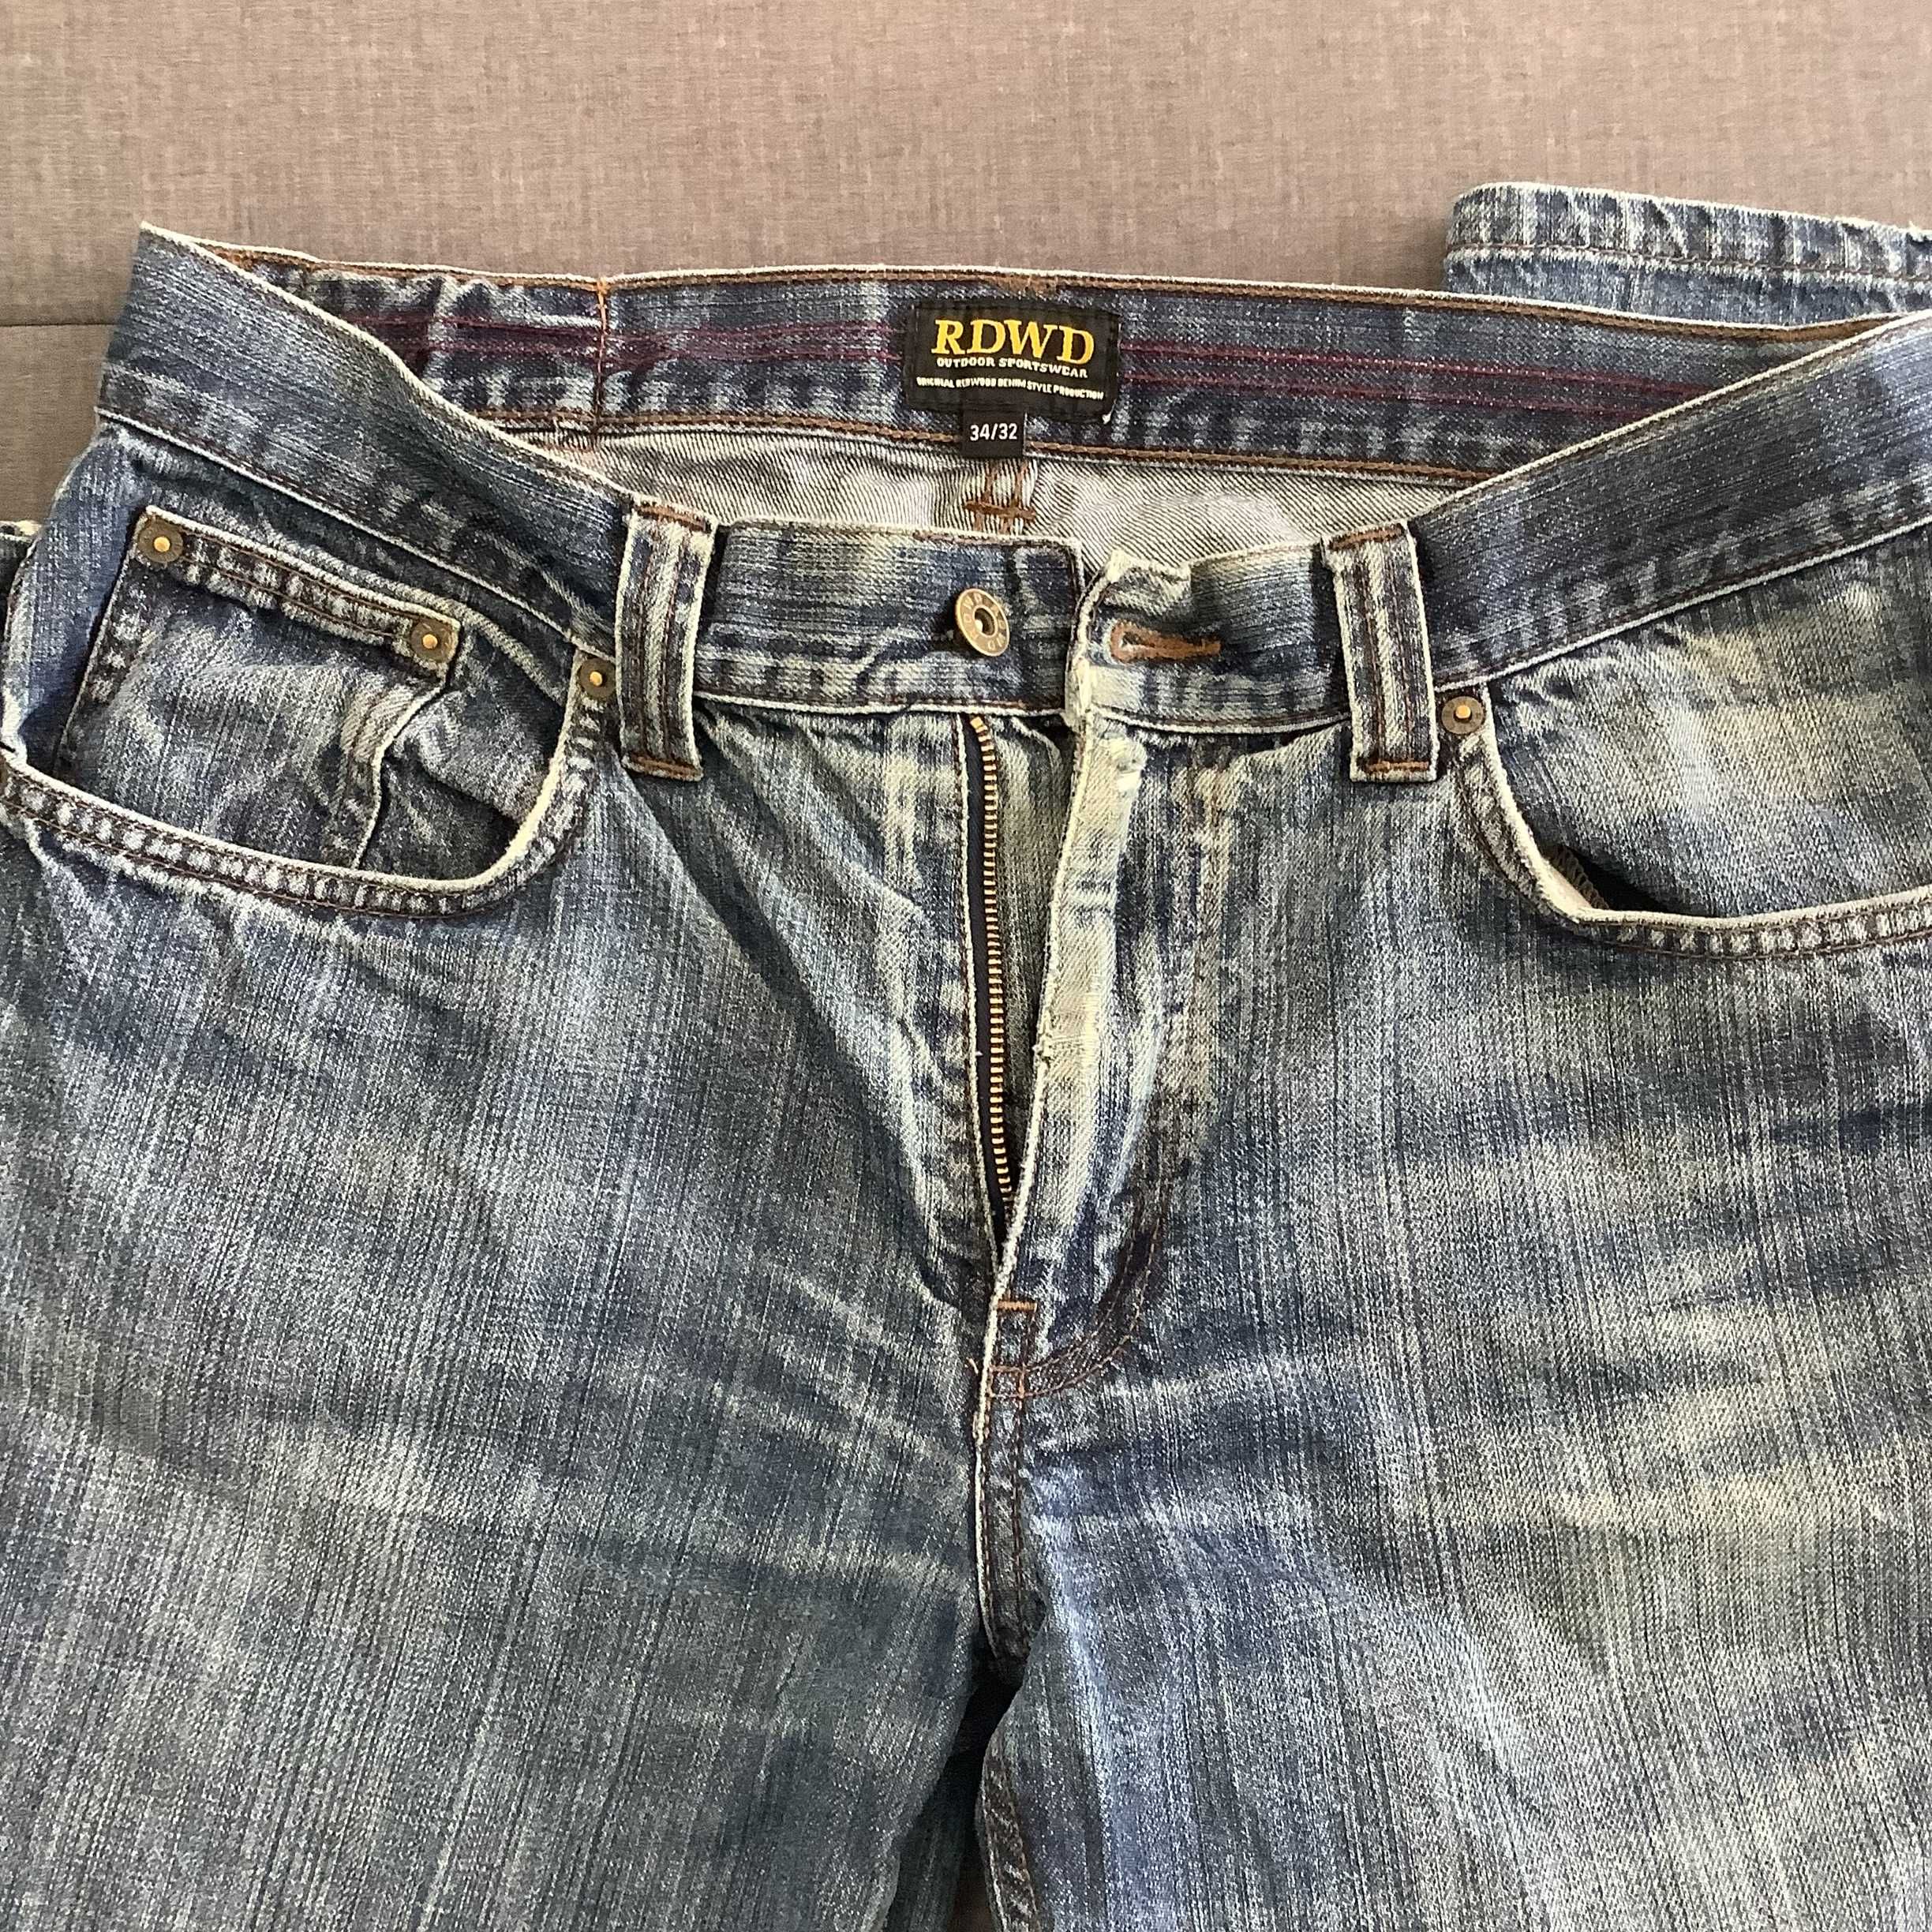 Spodnie męskie jeans 34/32 z wyprzedaży w USA